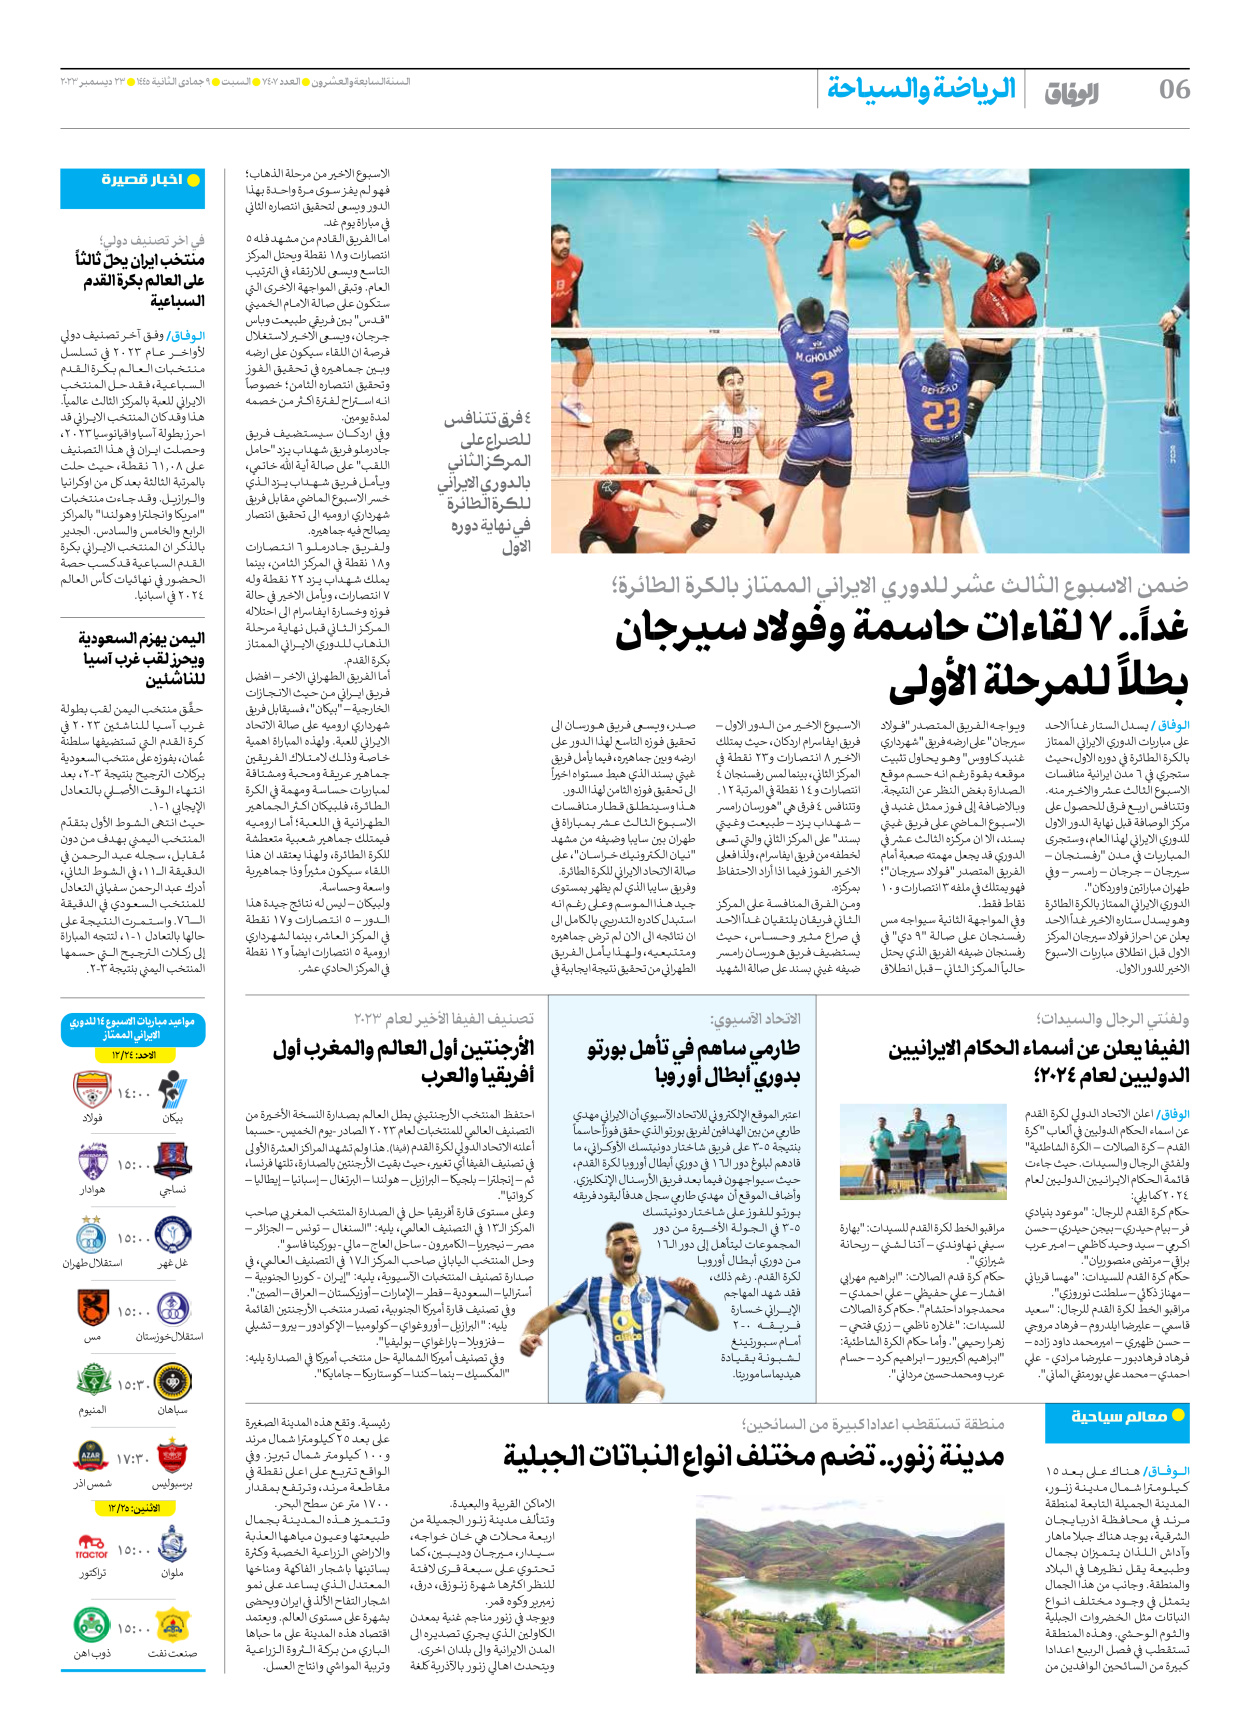 صحیفة ایران الدولیة الوفاق - العدد سبعة آلاف وأربعمائة وسبعة - ٢٣ ديسمبر ٢٠٢٣ - الصفحة ٦